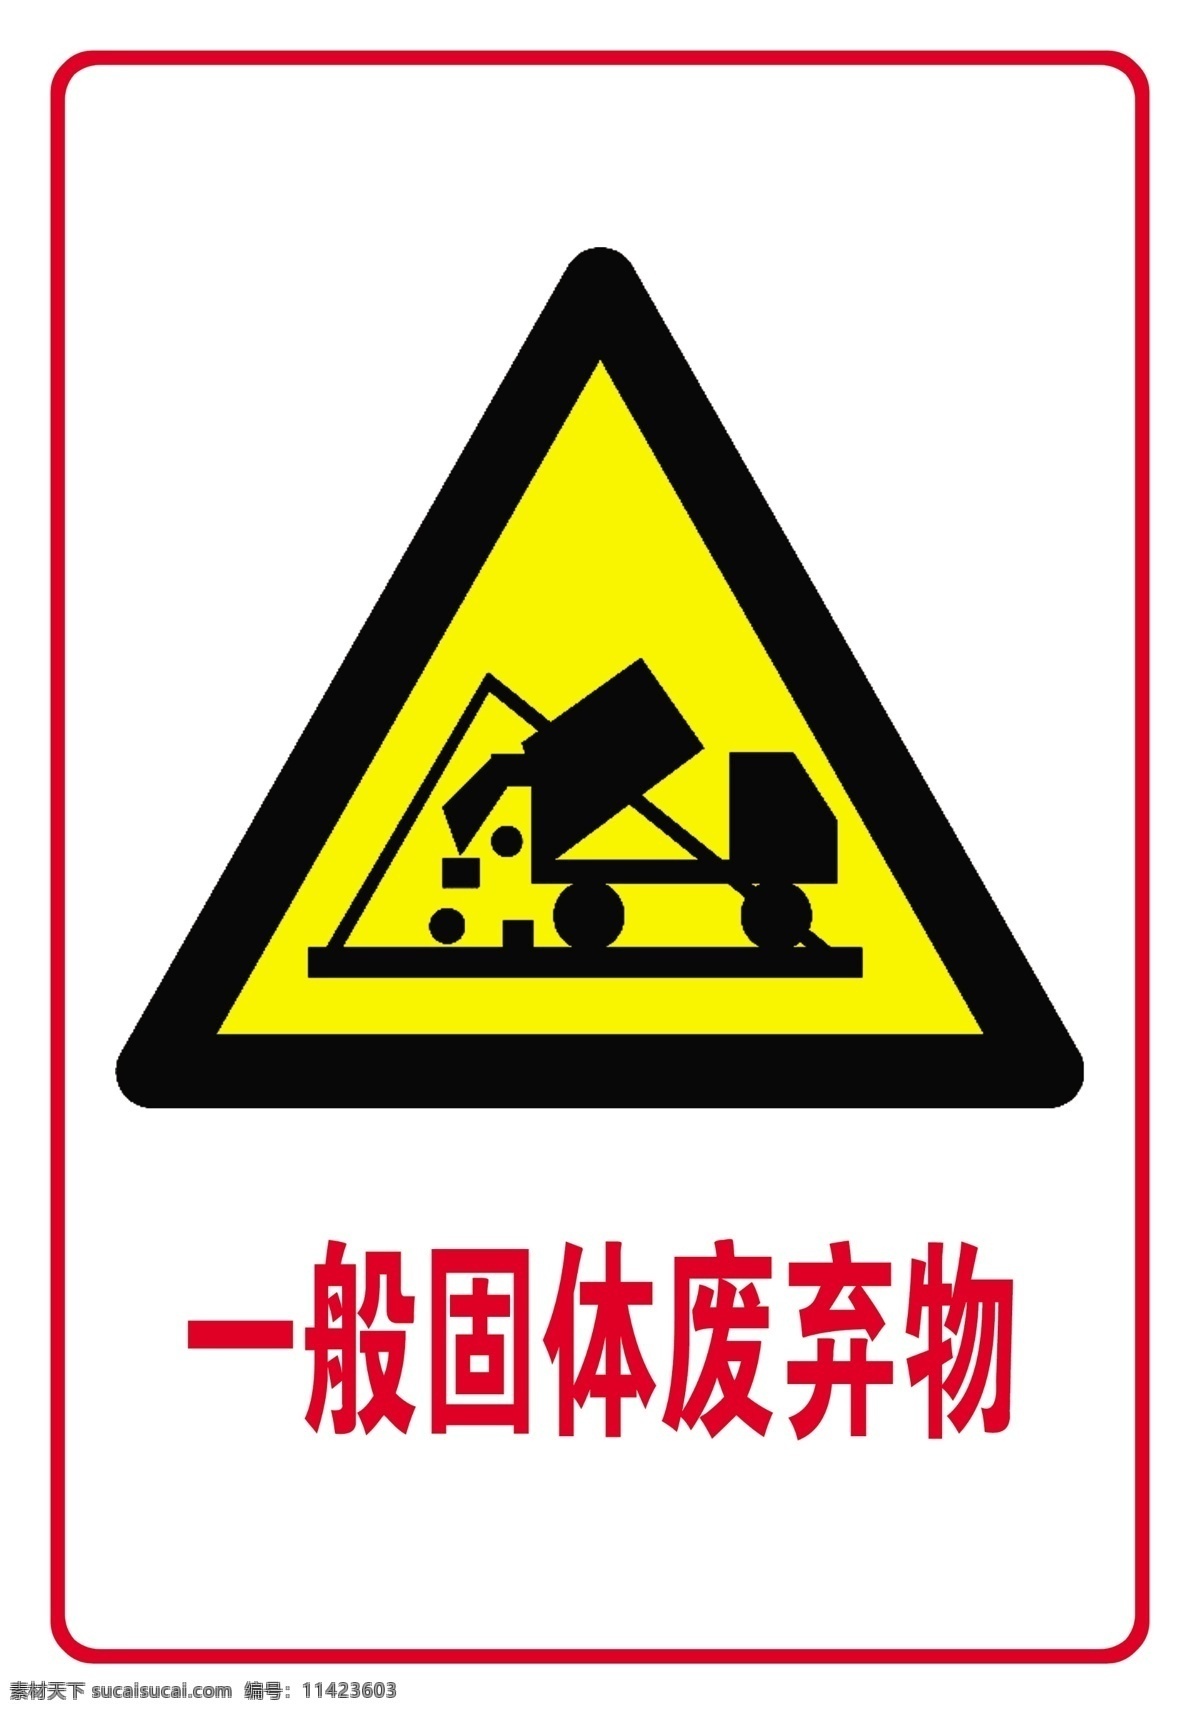 一般固体废物 固体 废物 车 垃圾 装卸 存放 标志图标 公共标识标志 标志 告知 牌 警示 分层